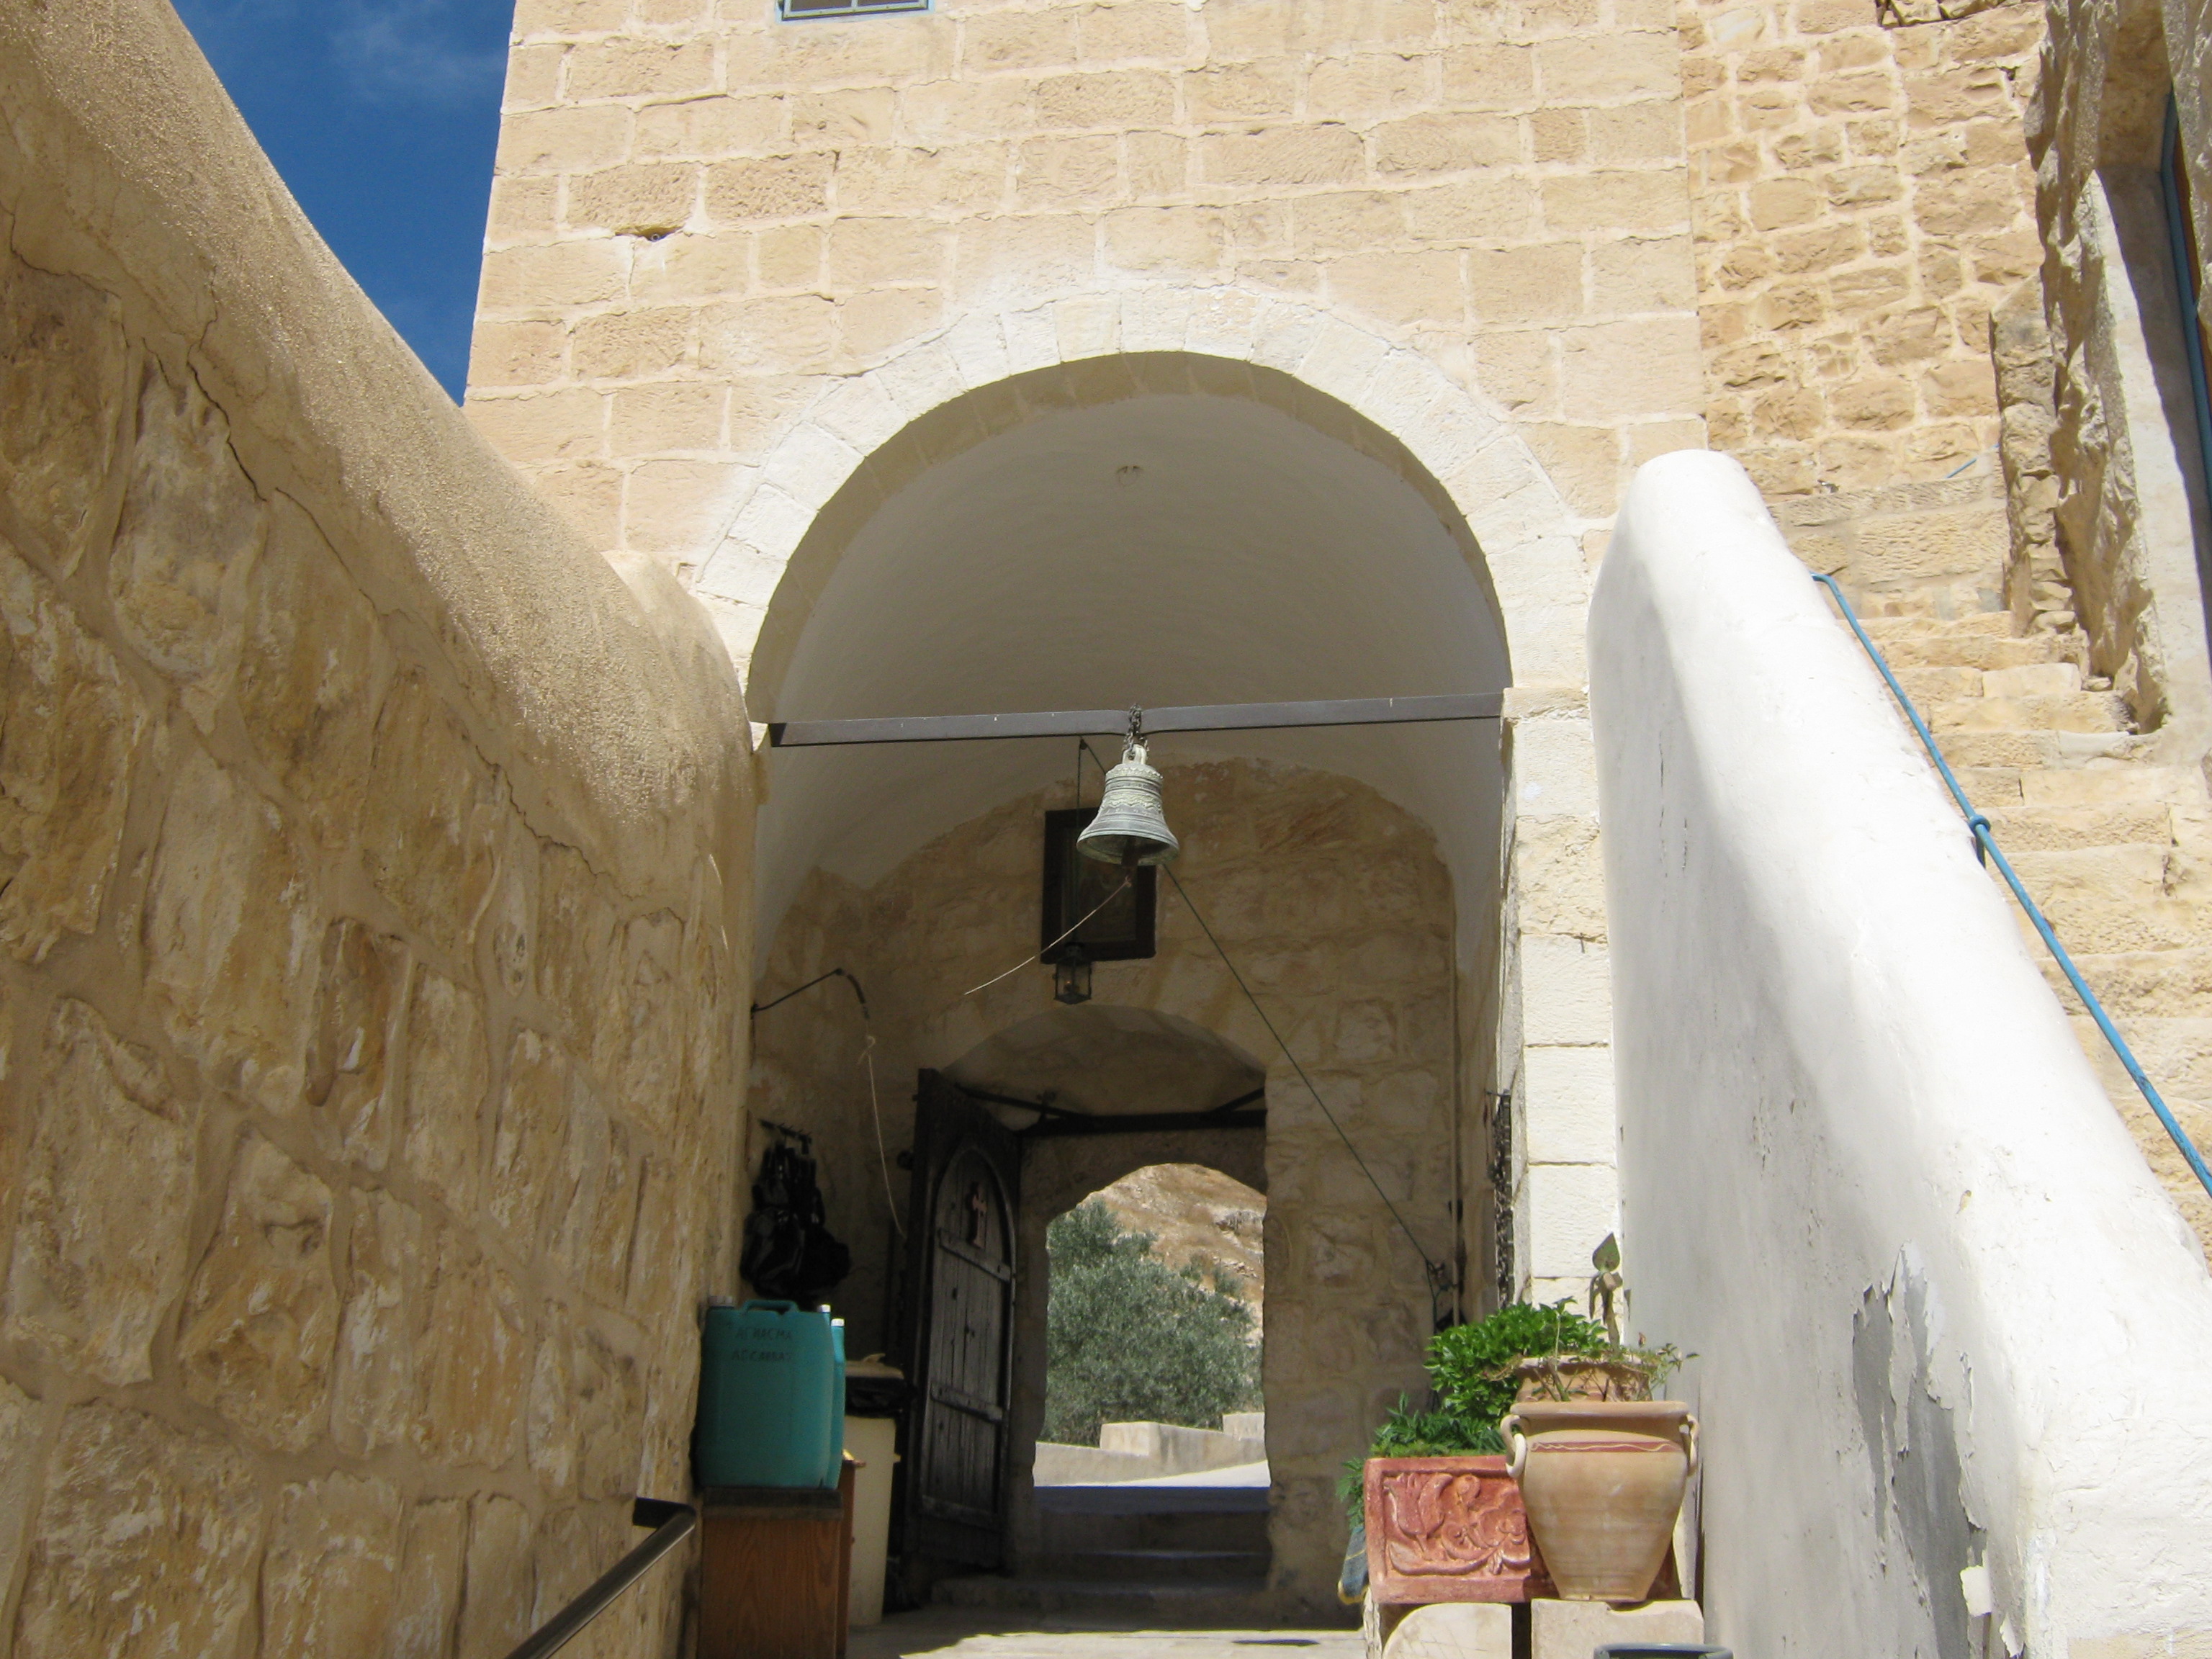 الدير من اقدم الأديرة في العالم